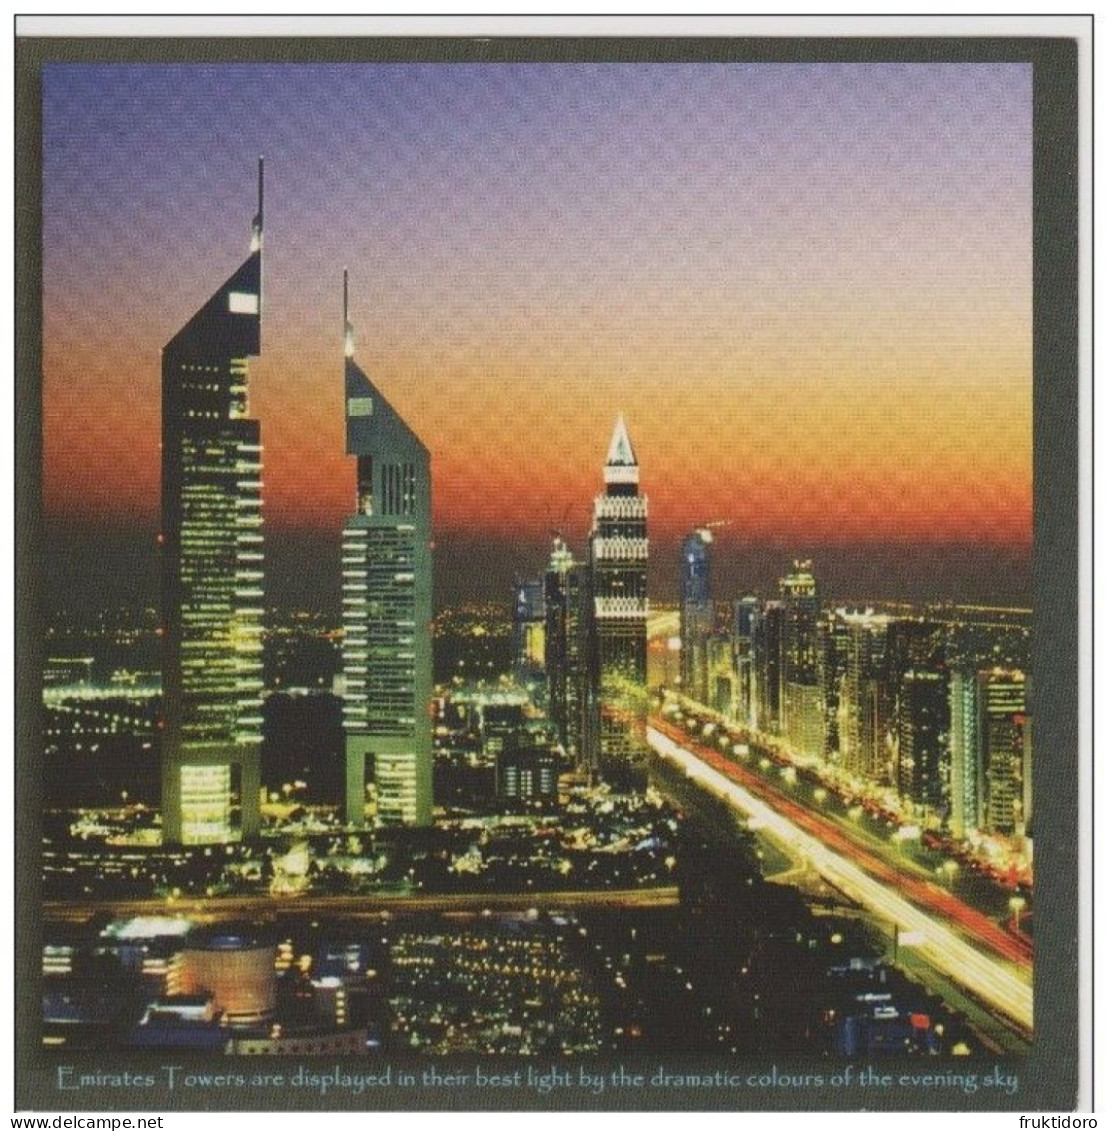 AKDX Postcards Dubai Airplanes - Jumeriah Beach Hotel - Atlantis The Palm - Burj Al Arab - United Arab Emirates - Dubai